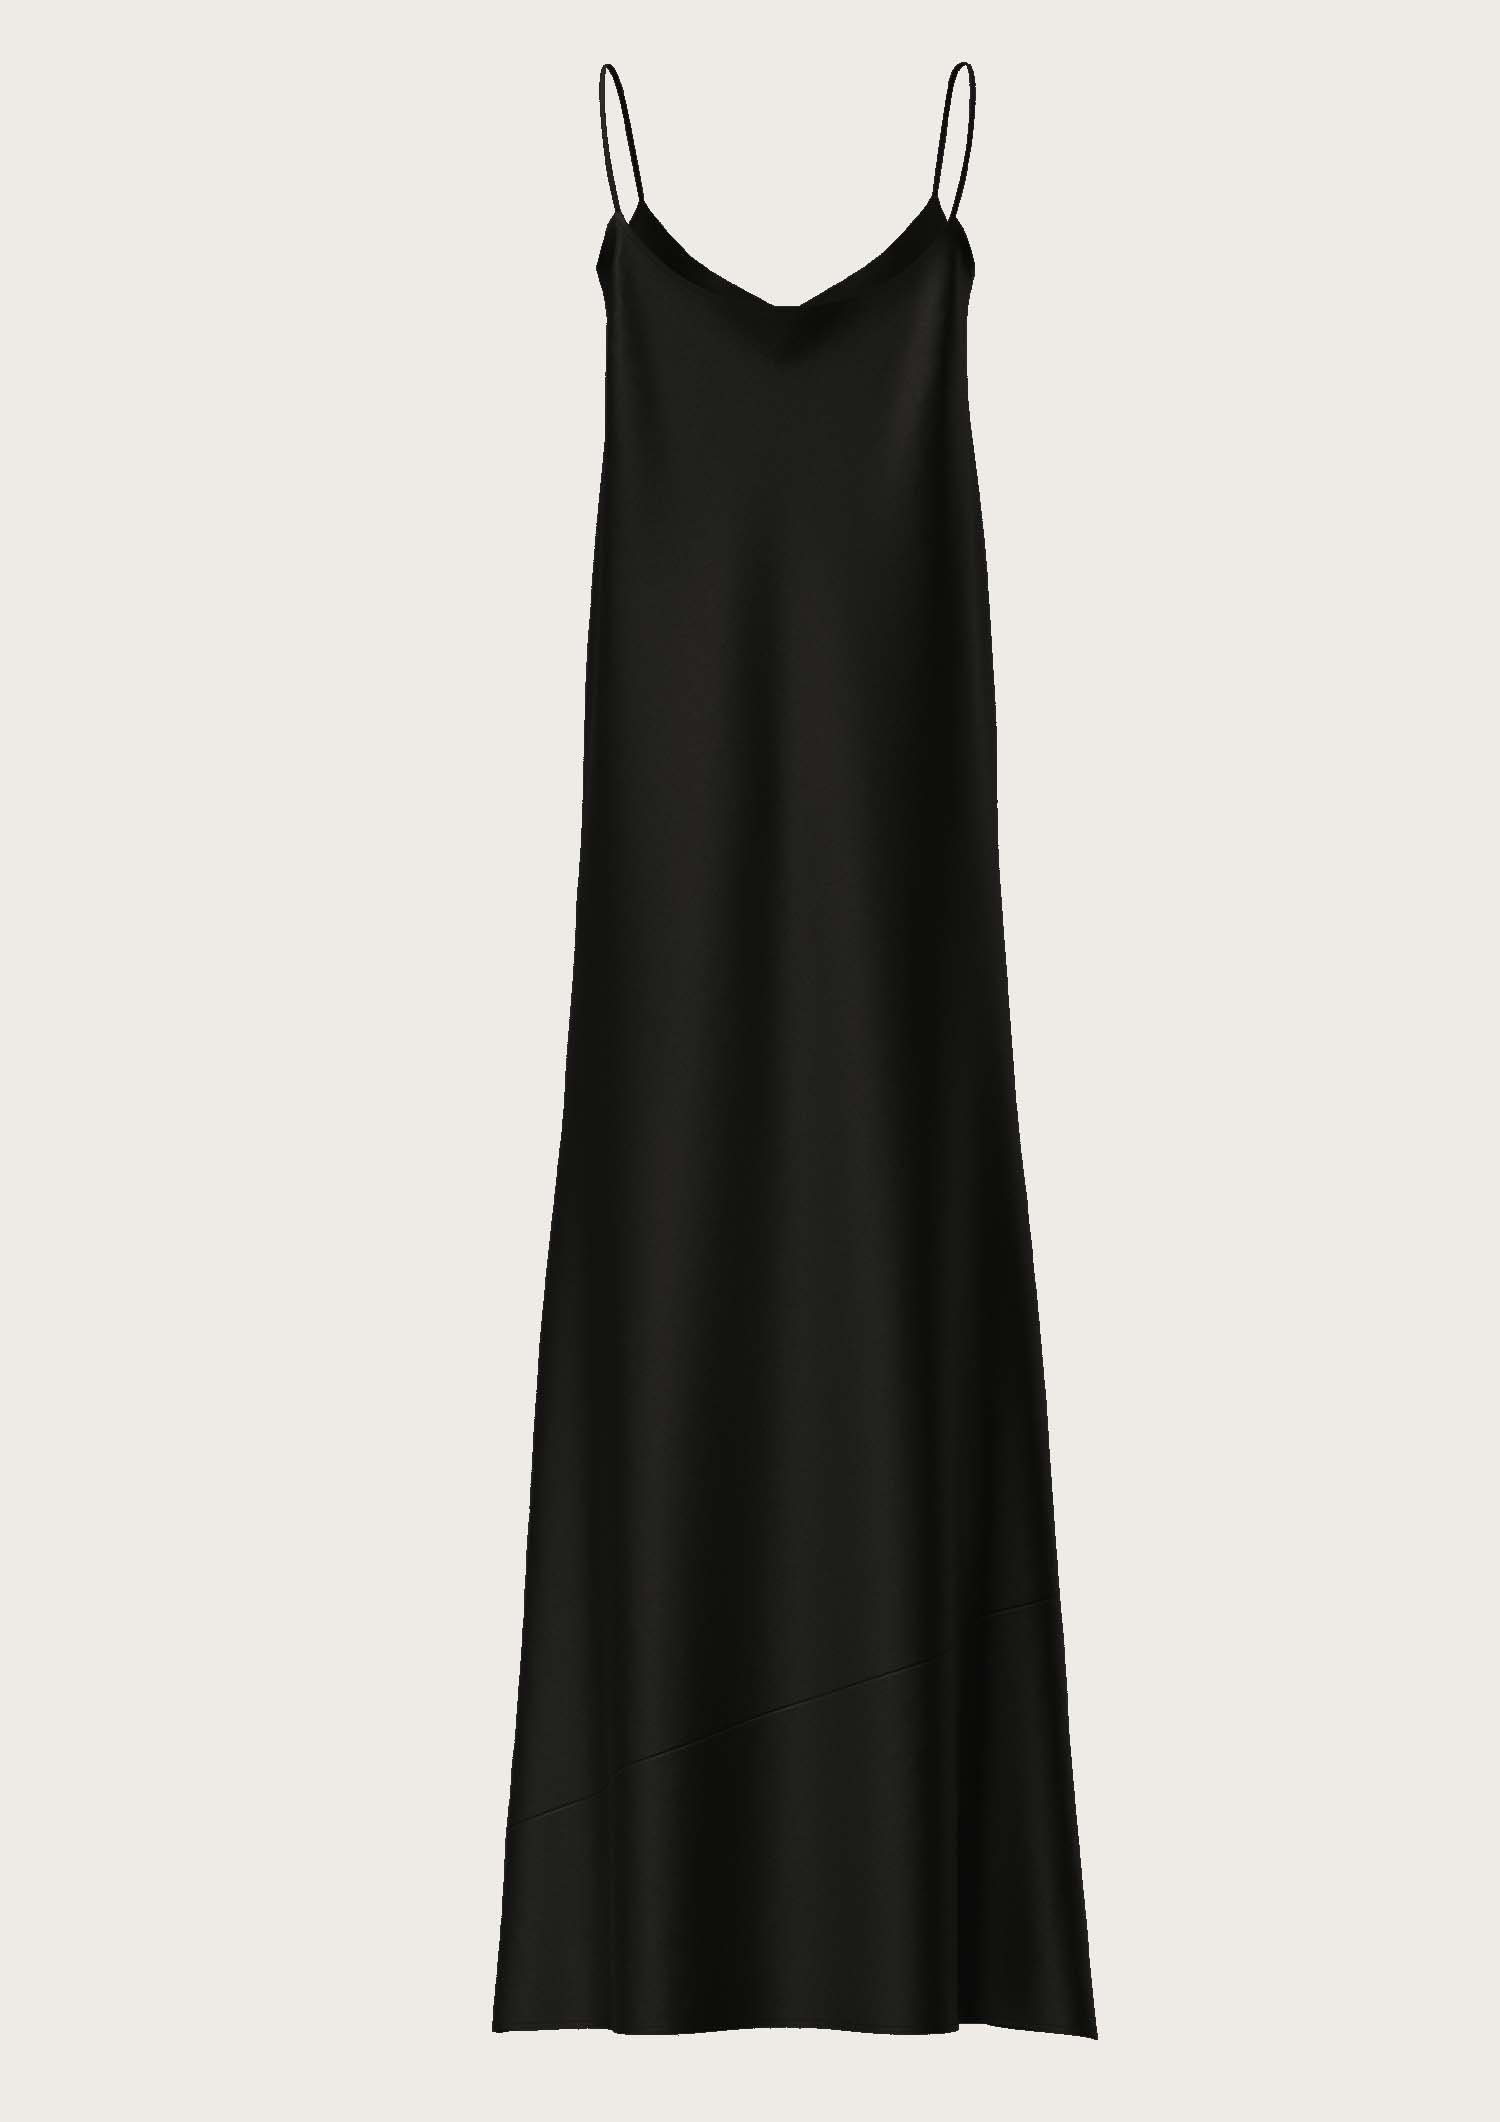 Silk Long Slip Dress Antoine in Black (Kopie)